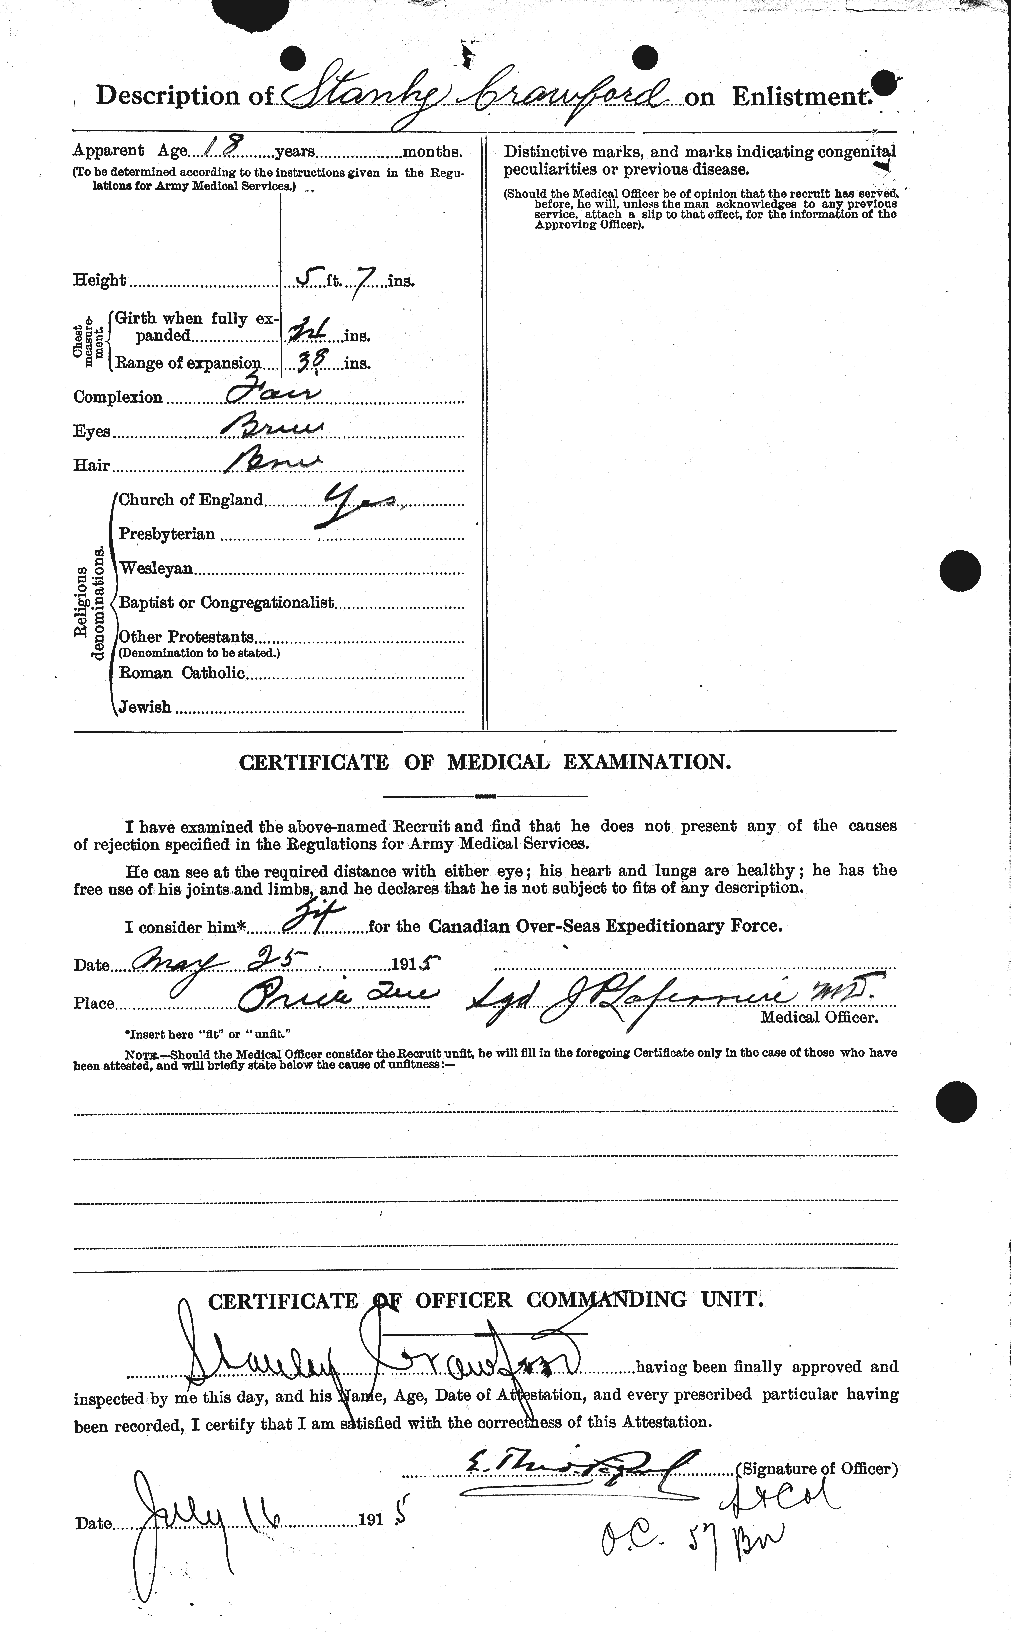 Dossiers du Personnel de la Première Guerre mondiale - CEC 061371b